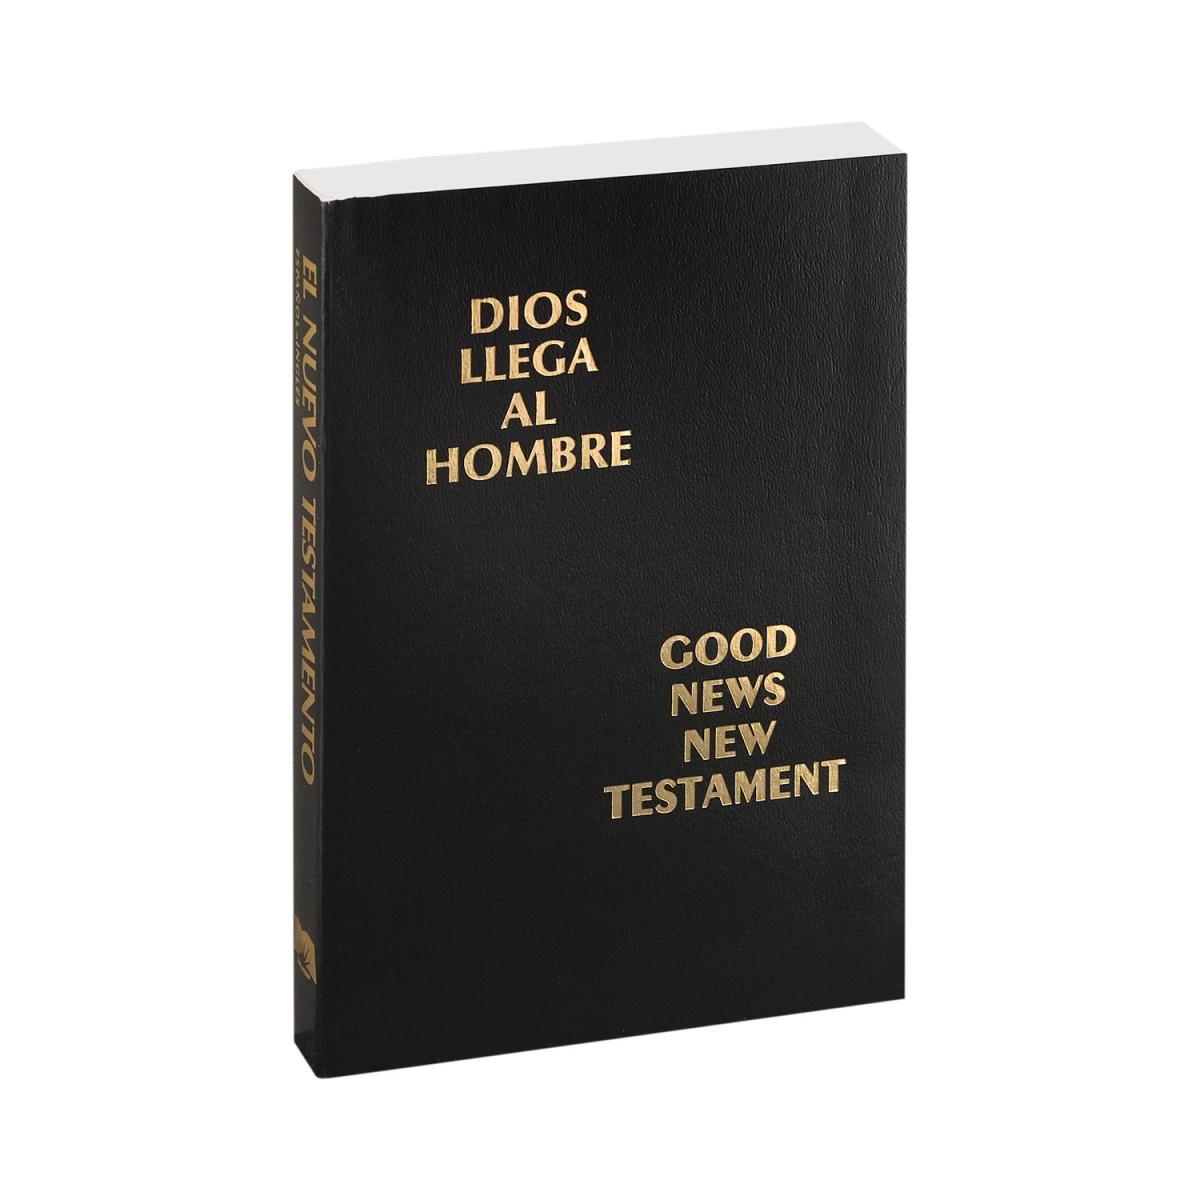 Spanish/English Bilingual New Testament | Bibles.com | Low-cost Bibles